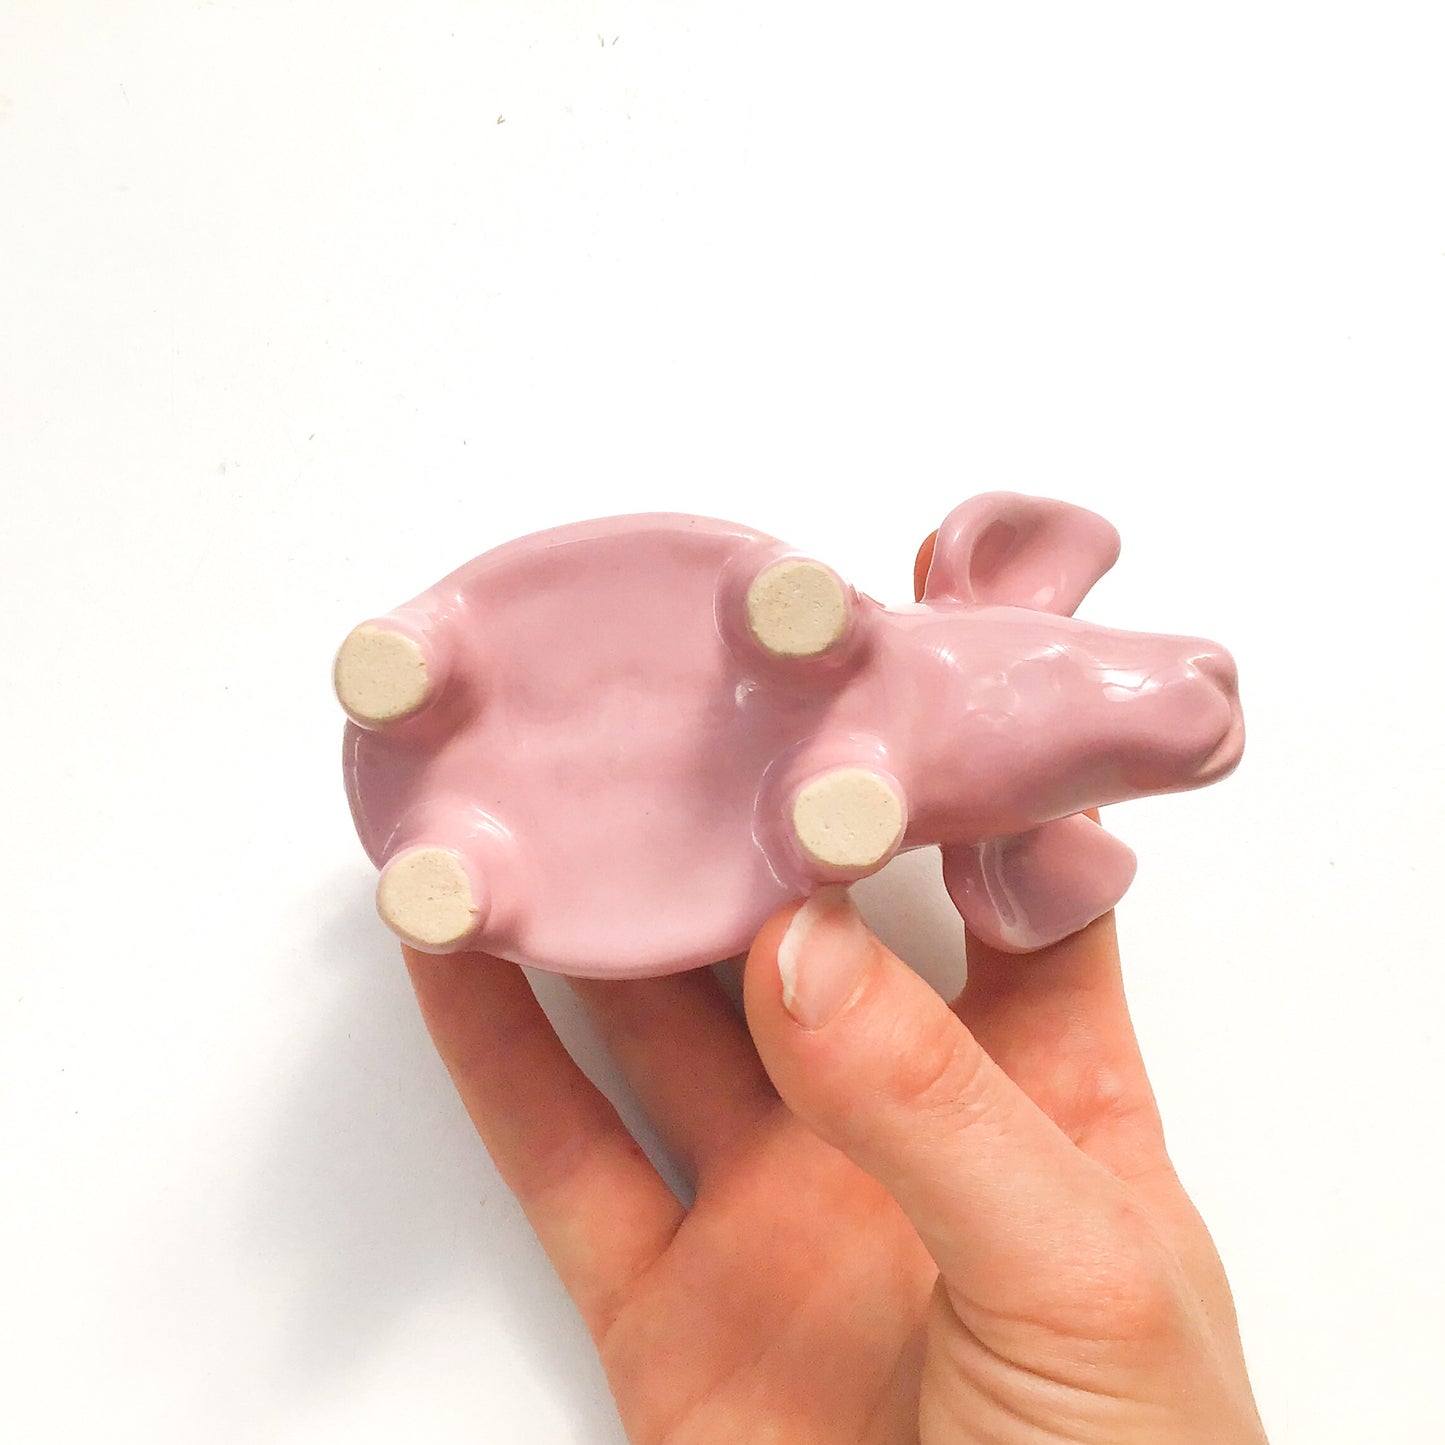 Little Pink Pig Pot - Ceramic Pig Planter